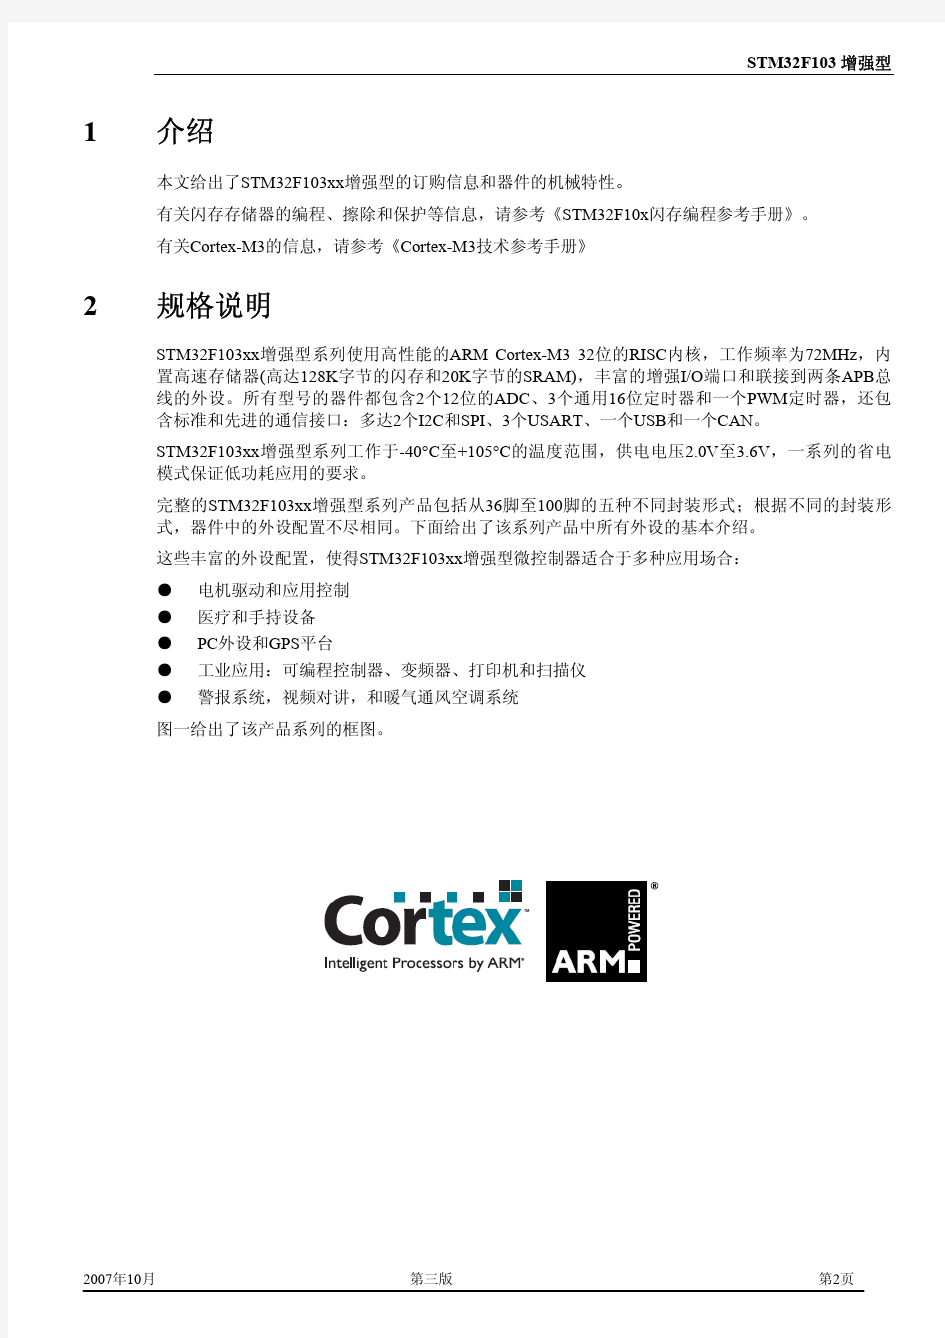 STM32F103_cn 中文版数据手册